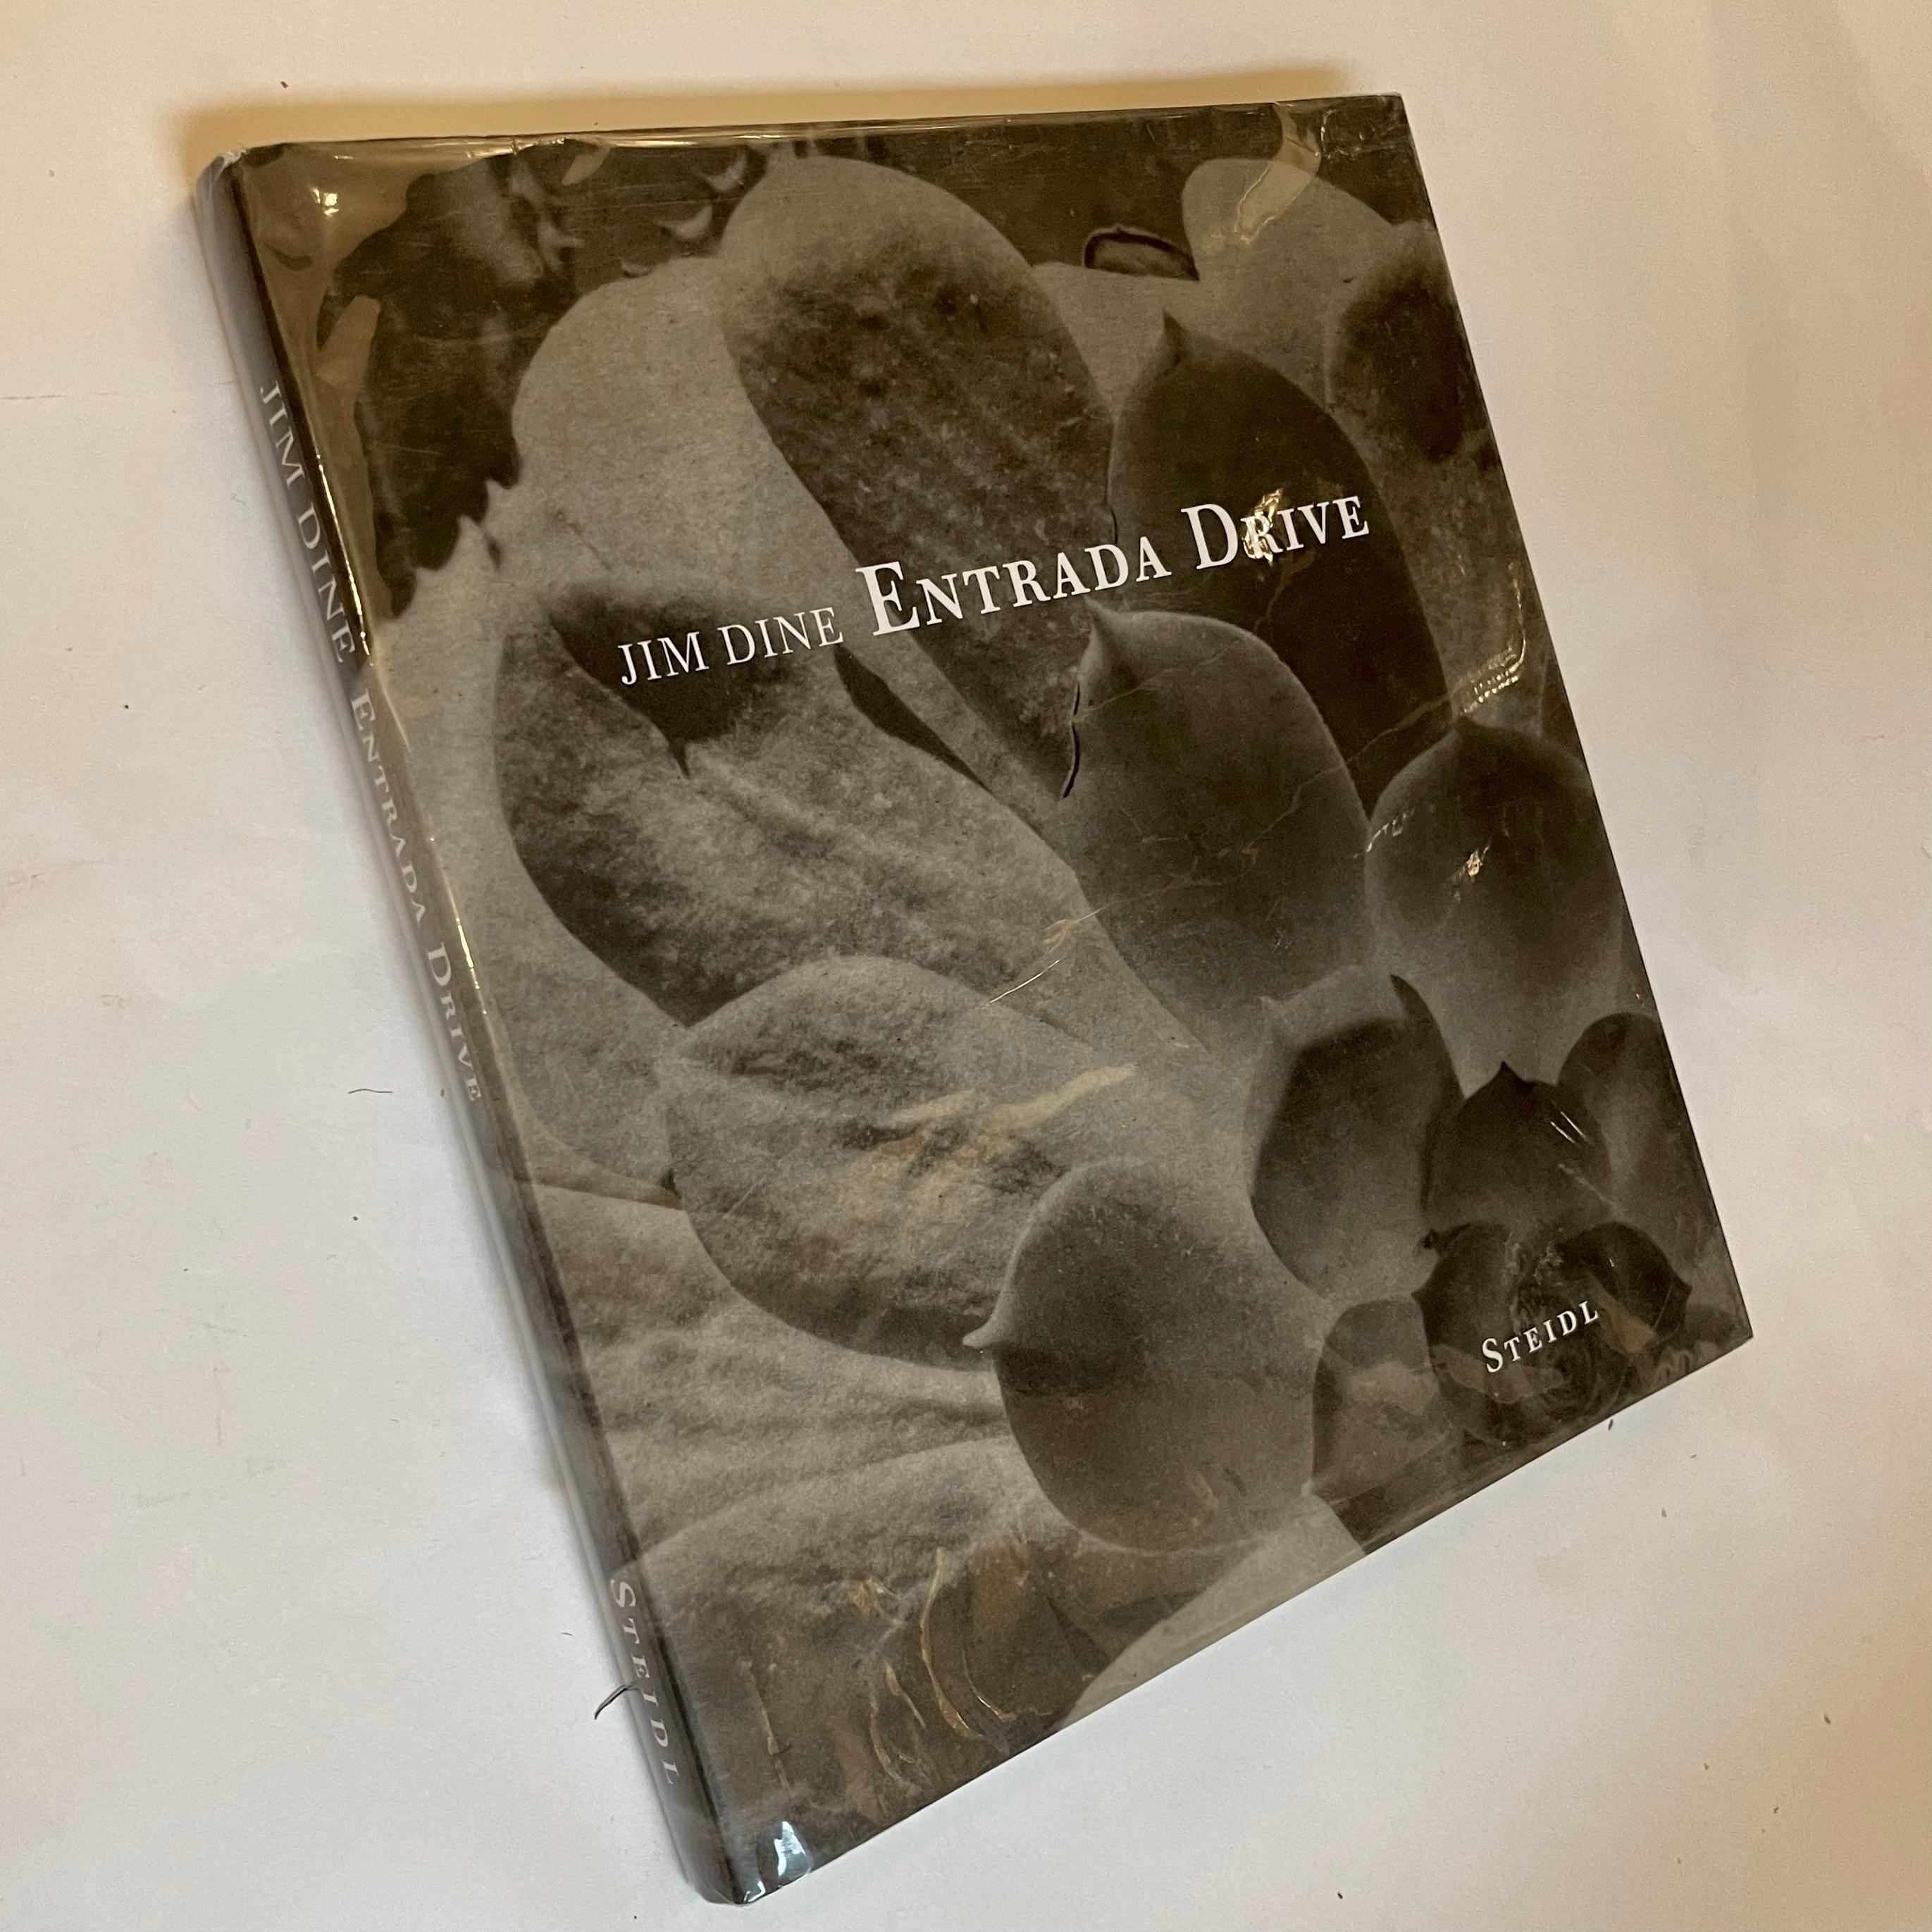 Entrada Drive, Jim Dine, Signierte Erstausgabe, Steidl, Göttingen, 2005 7